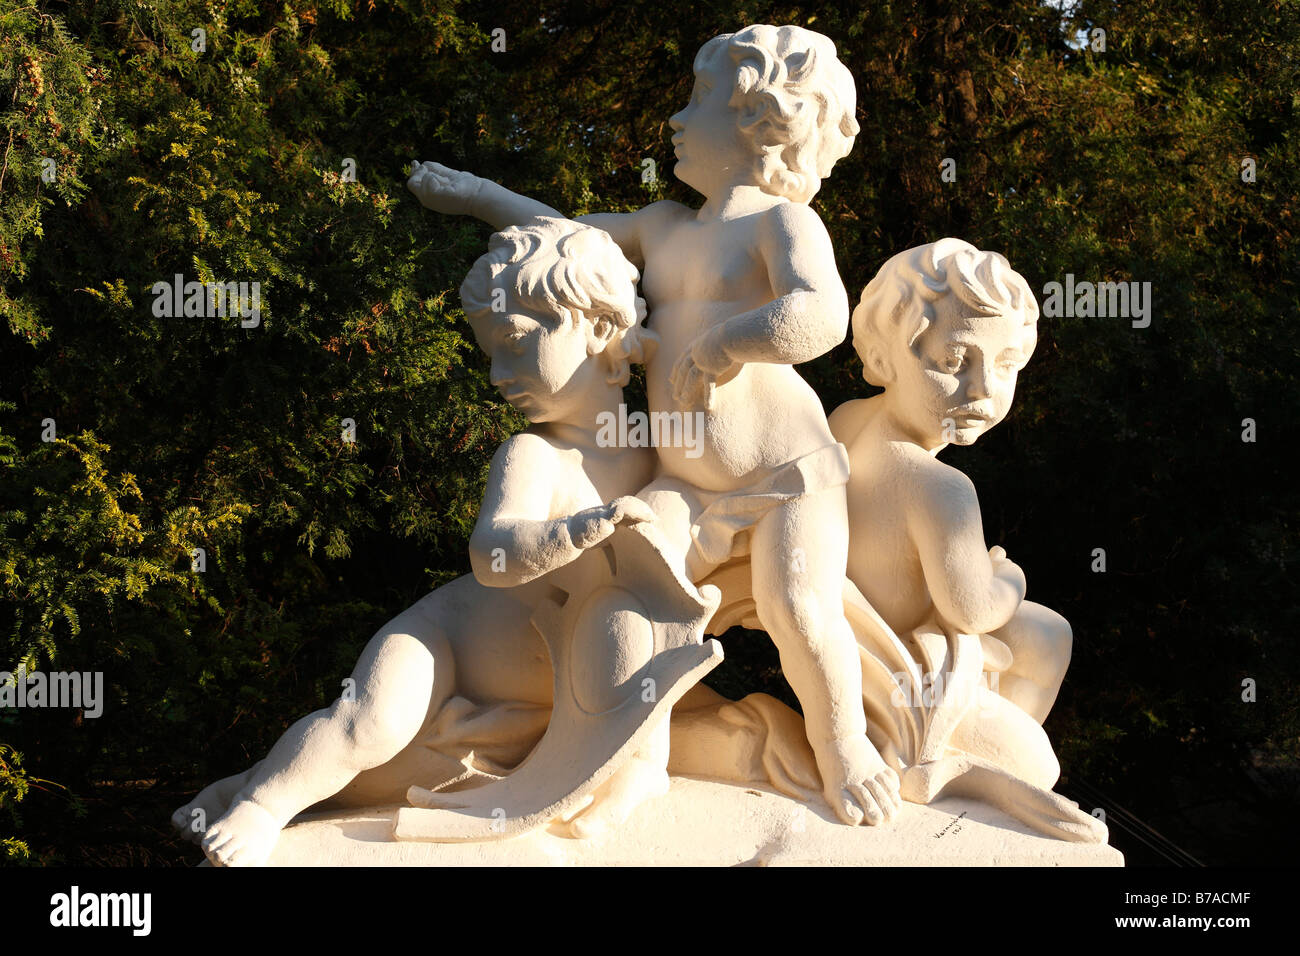 Sculpted puttos in the Burggarten Vienna, Austria, Europe Stock Photo